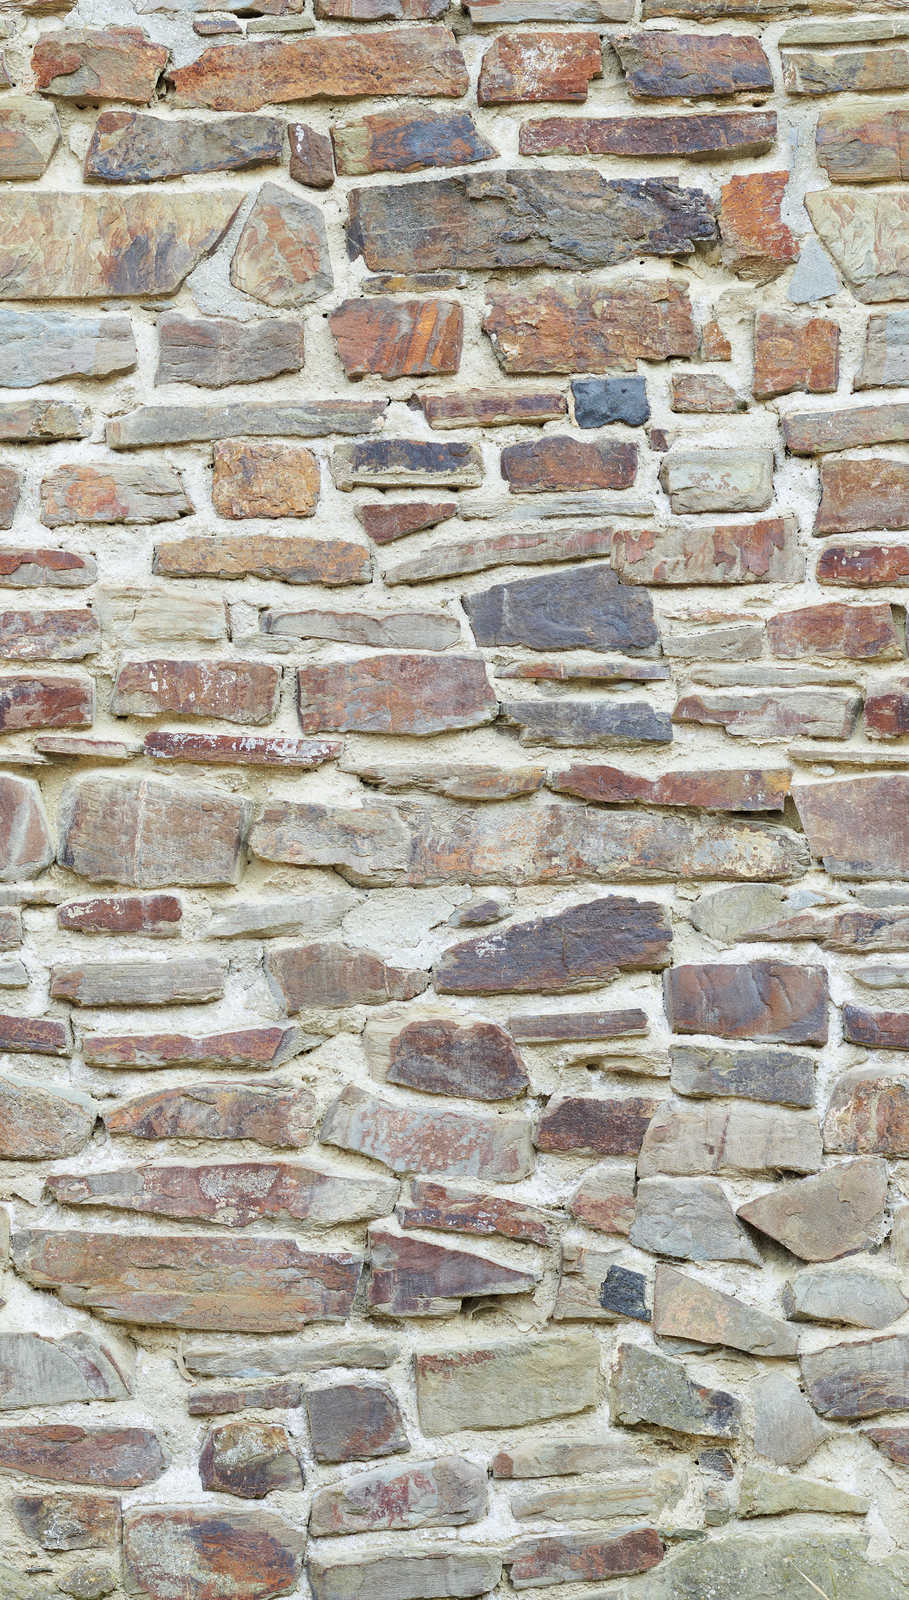             Classic Stone Wall Optics Onderlaag behang in lichte kleuren - Beige, Bruin, Crème
        